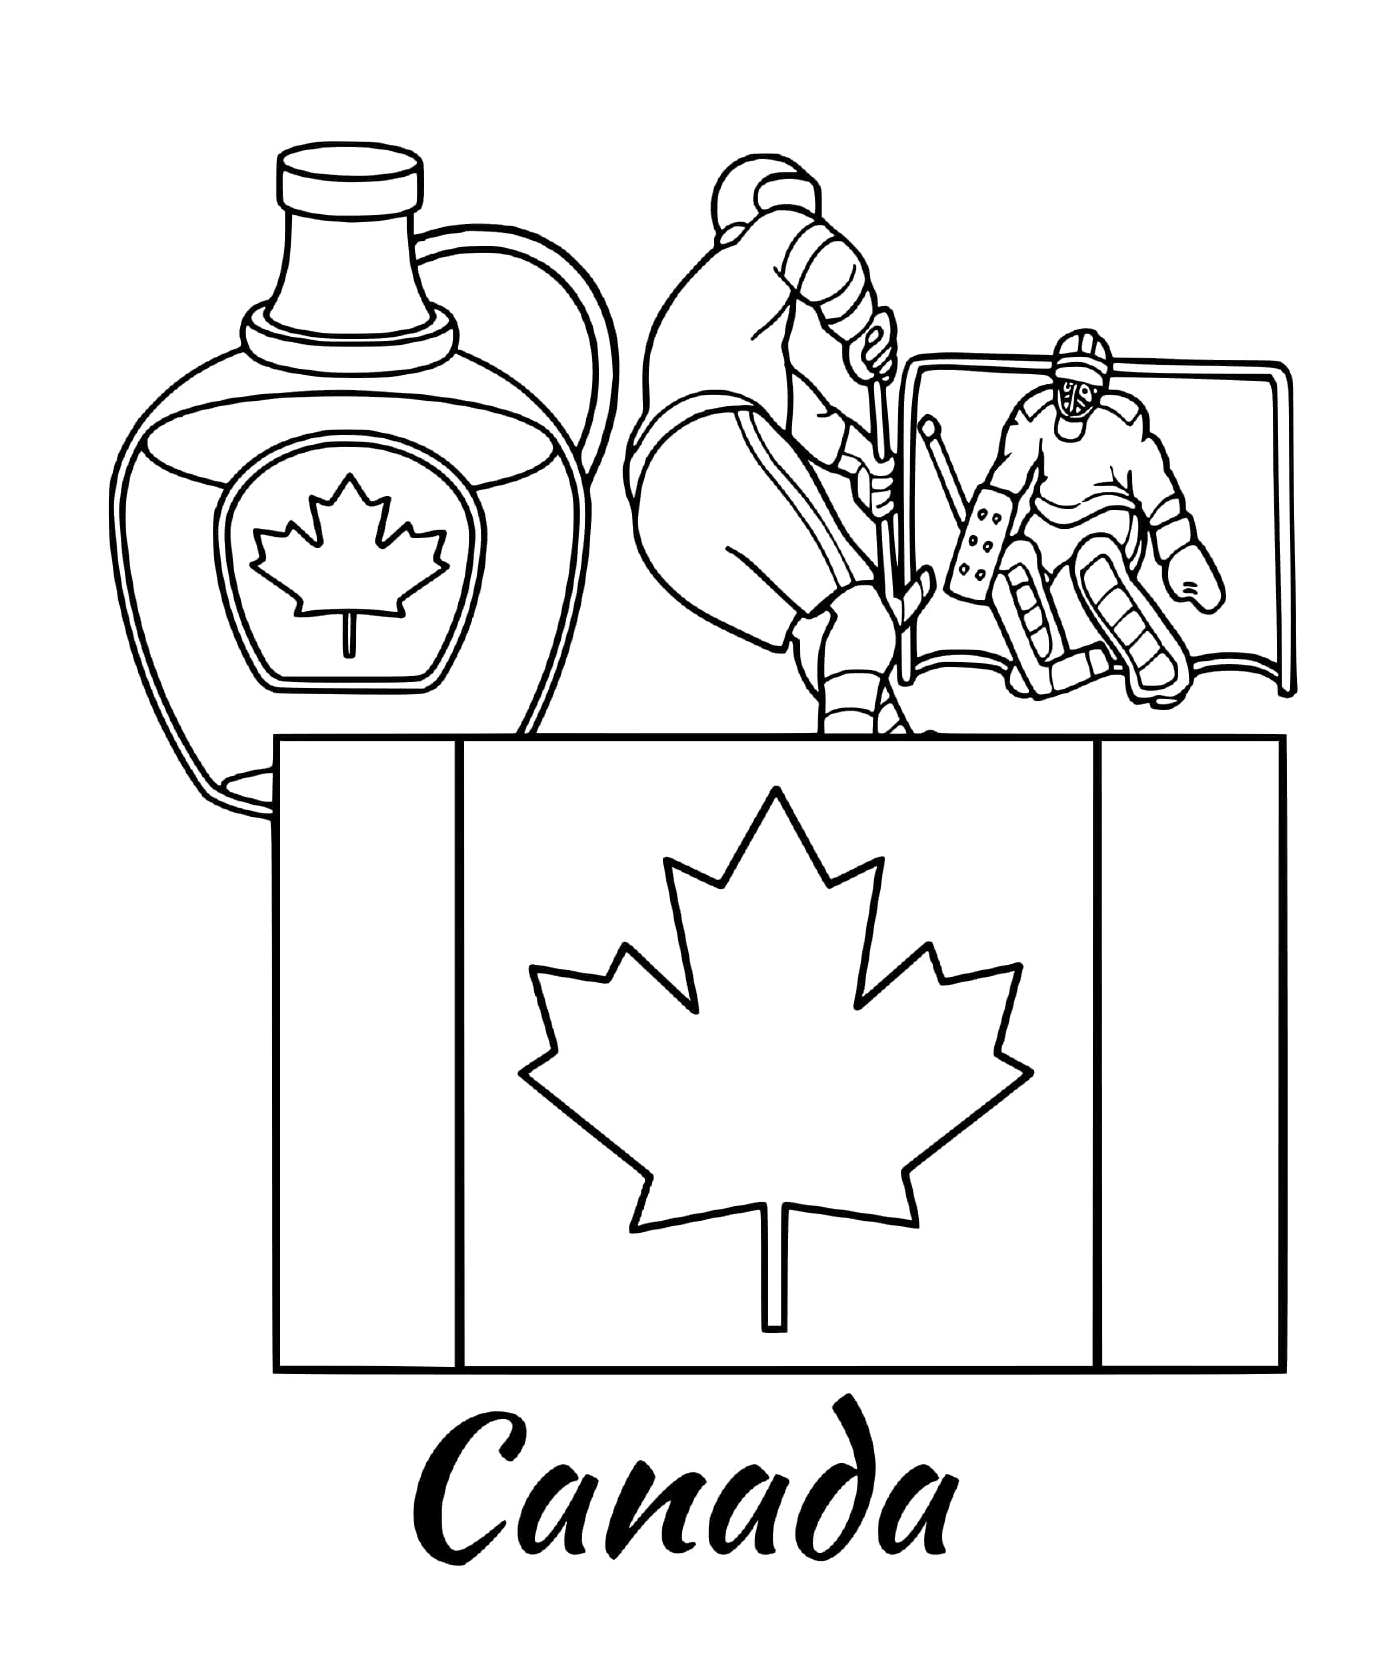  Bandiera del Canada con acero 